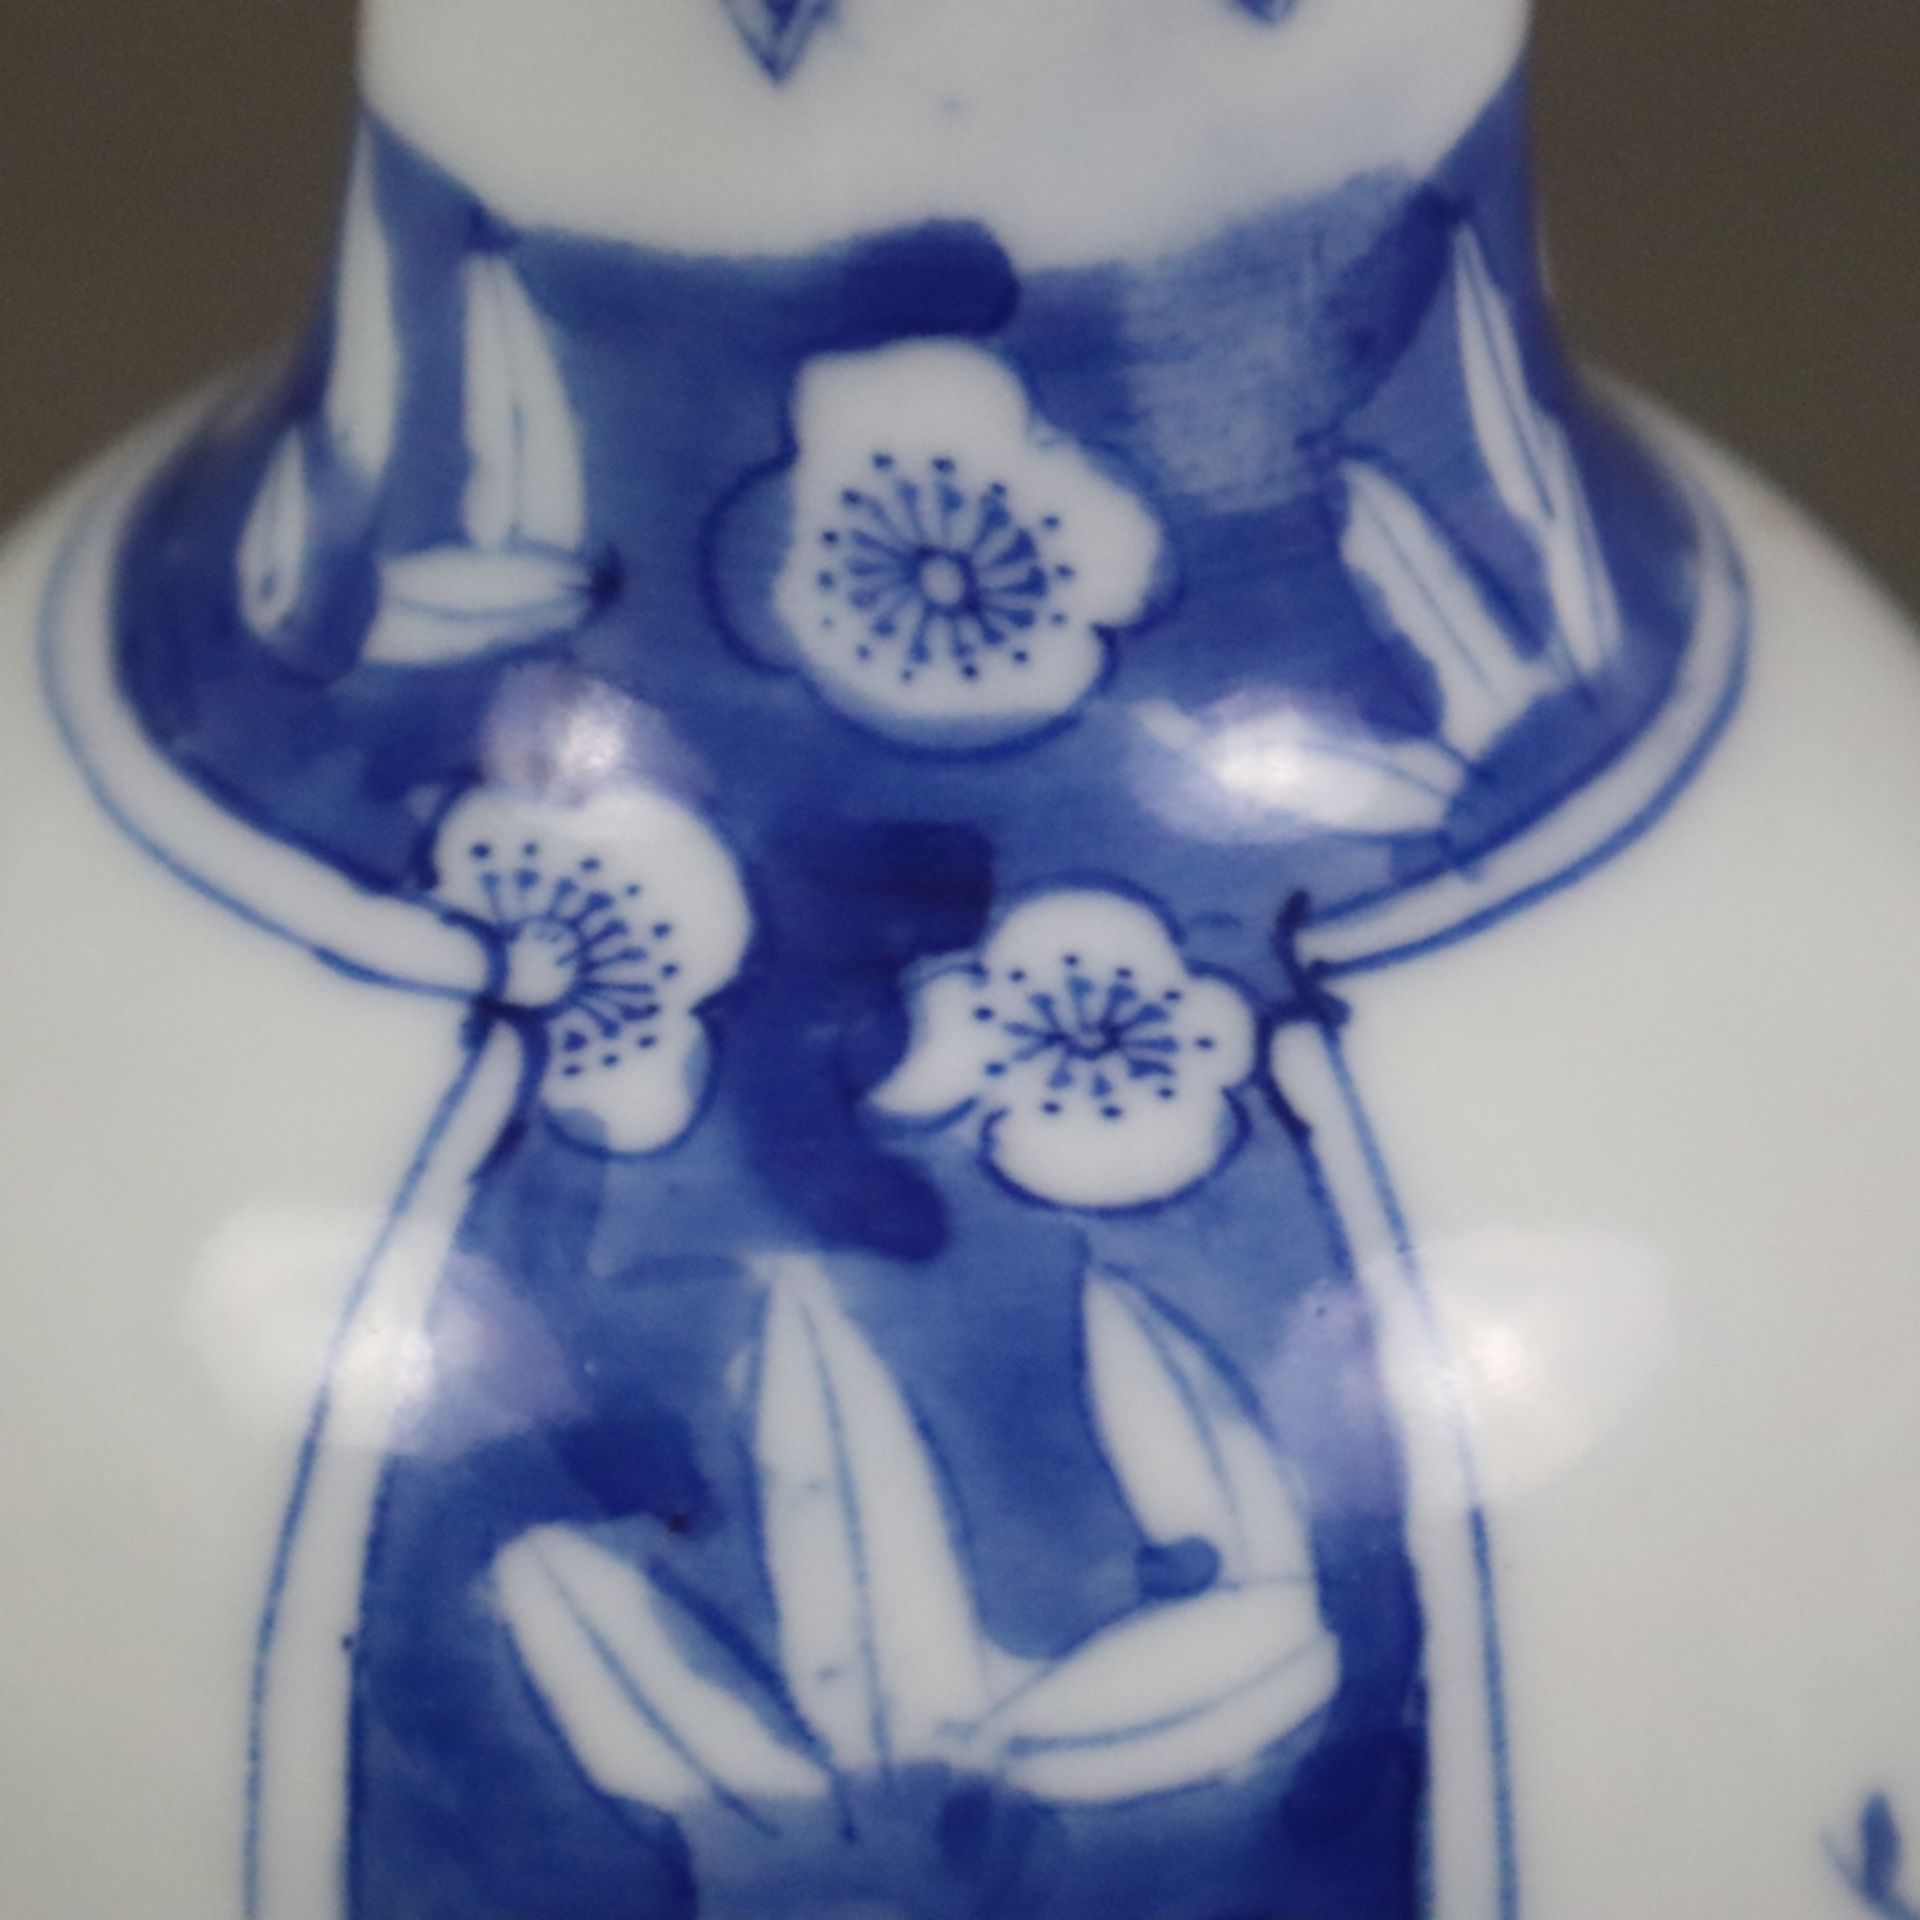 Blau-weiße Balustervase - China 20.Jh., dekoriert in Unterglasurblau mit Pflaumenblüten über gebors - Bild 7 aus 8